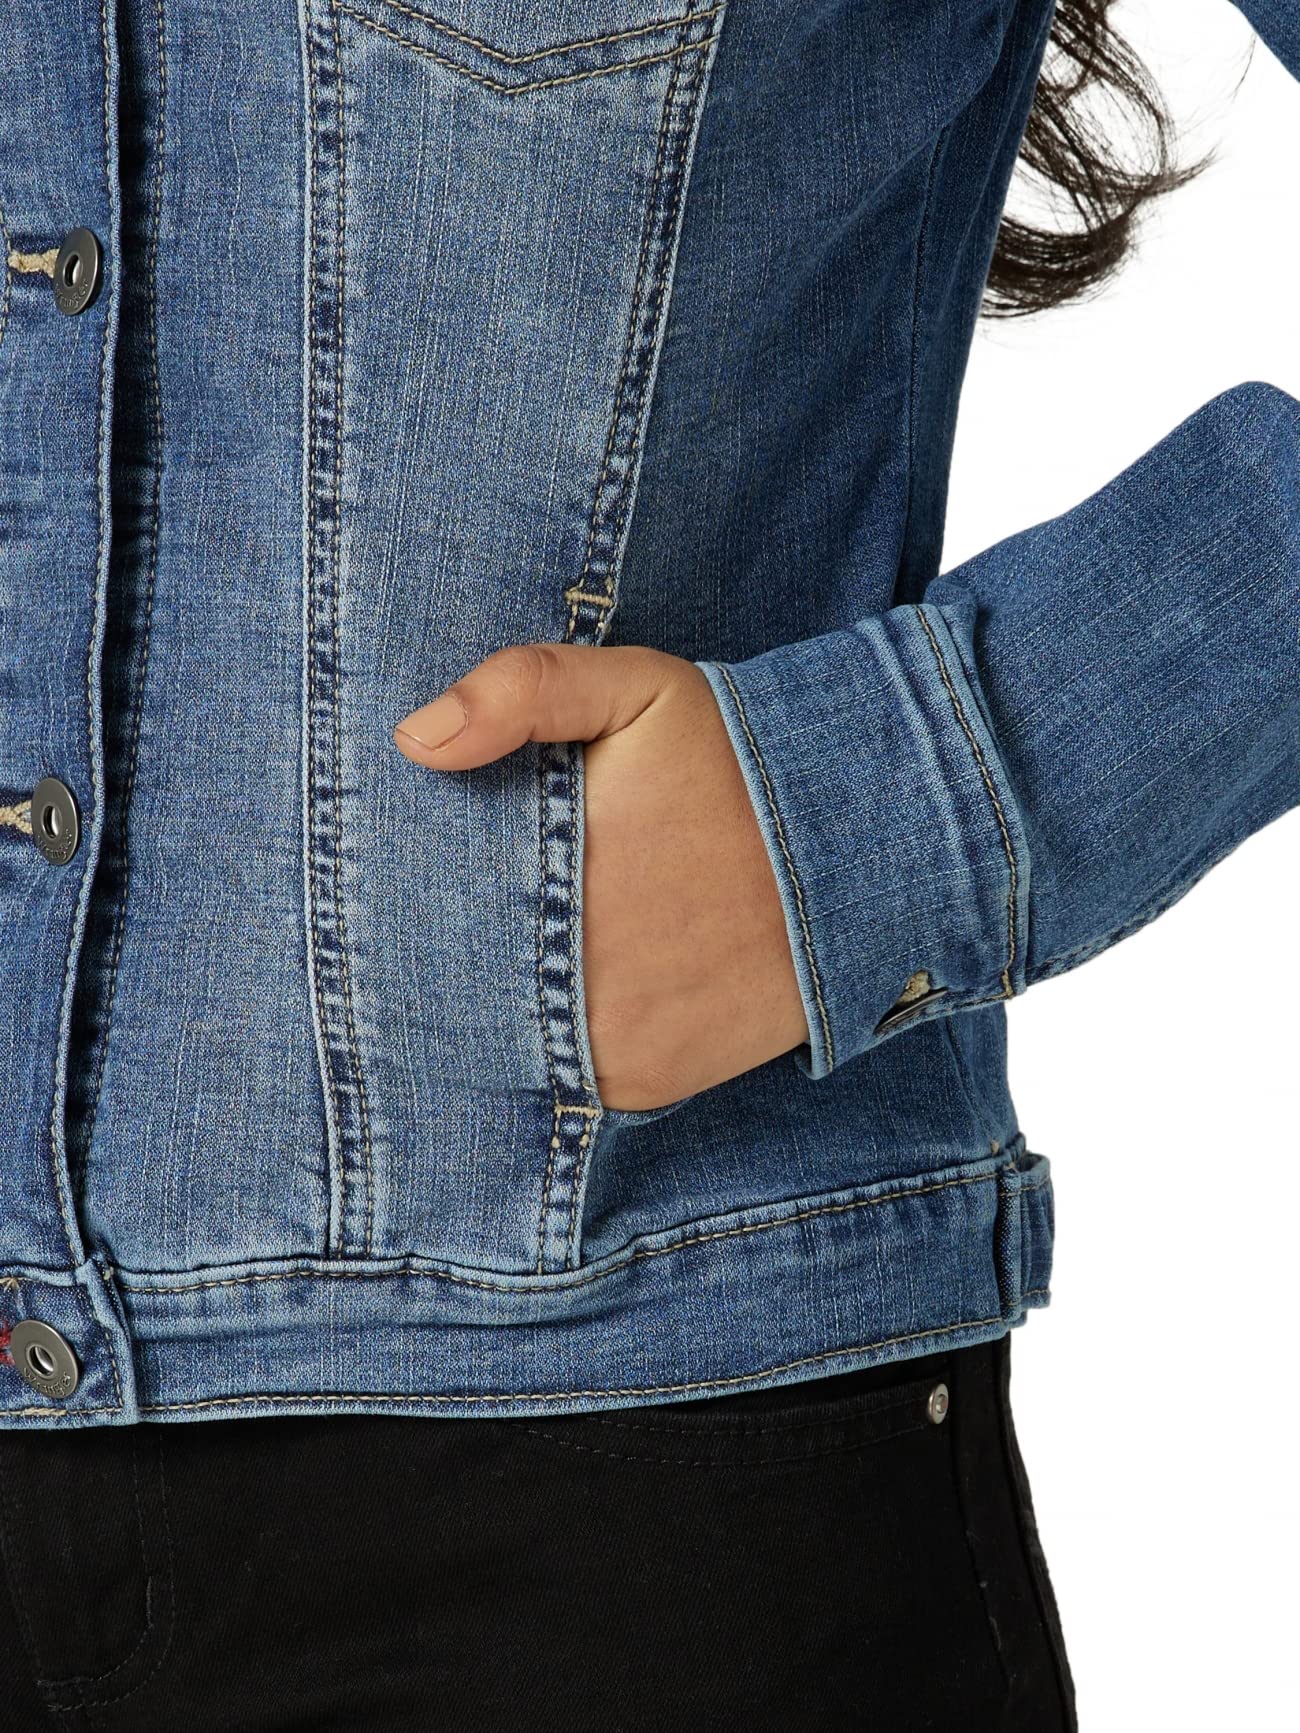 Wrangler Authentics Women's Stretch Denim Jacket